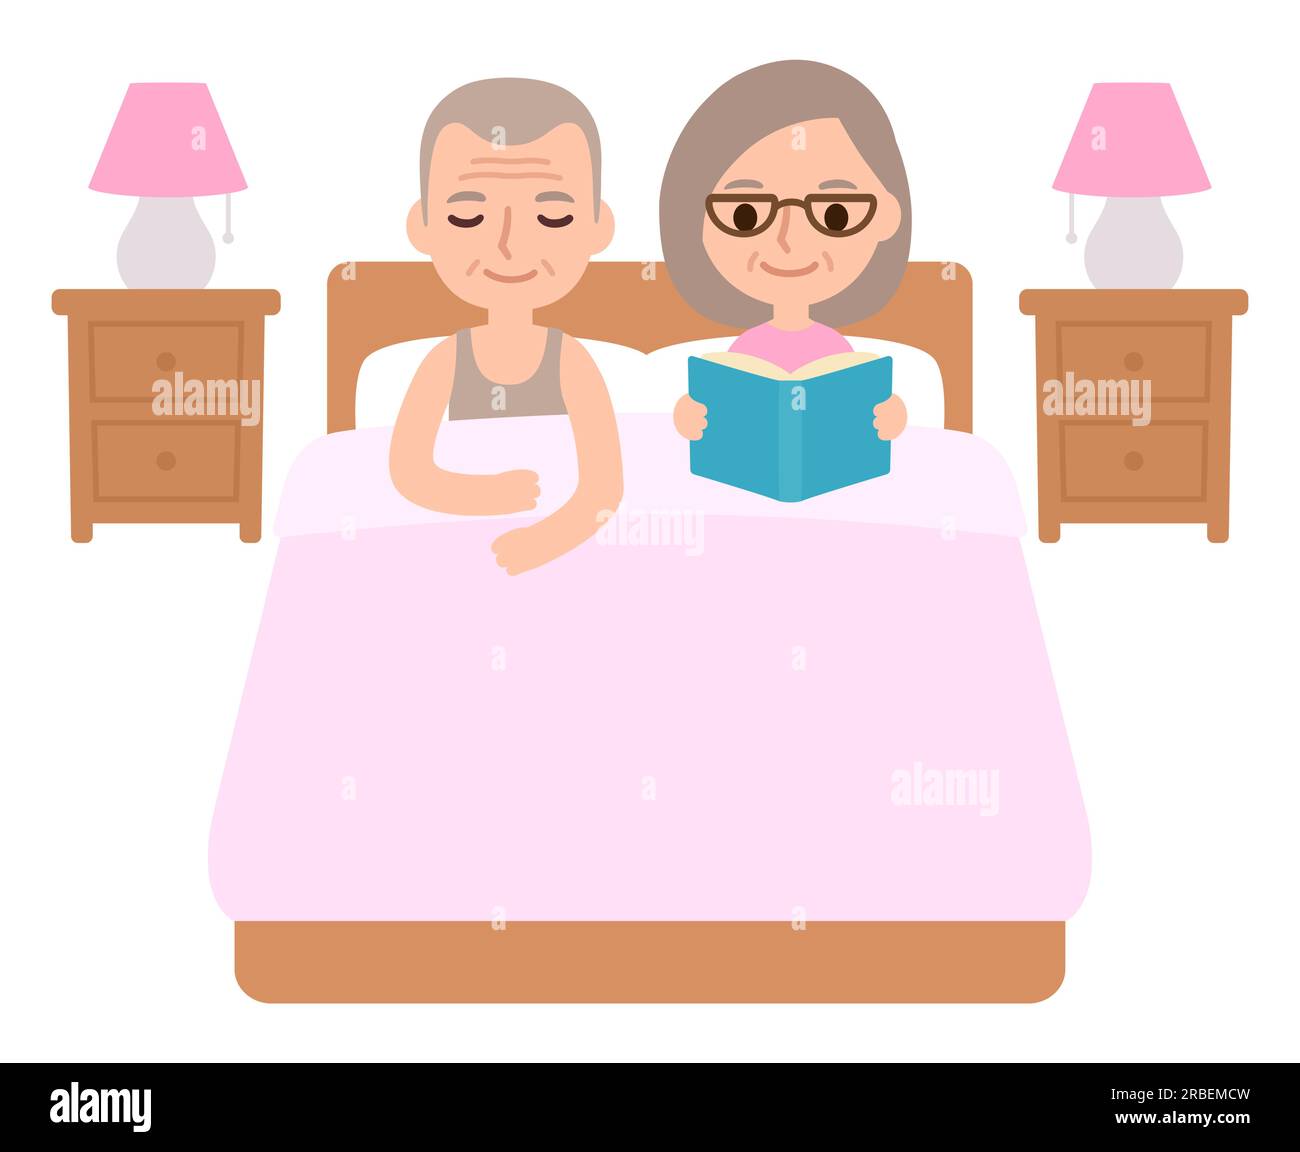 Linda pareja senior de dibujos animados en la cama, hombre durmiendo y mujer leyendo un libro. Rutina de relajación a la hora de dormir ilustración vectorial. Ilustración del Vector